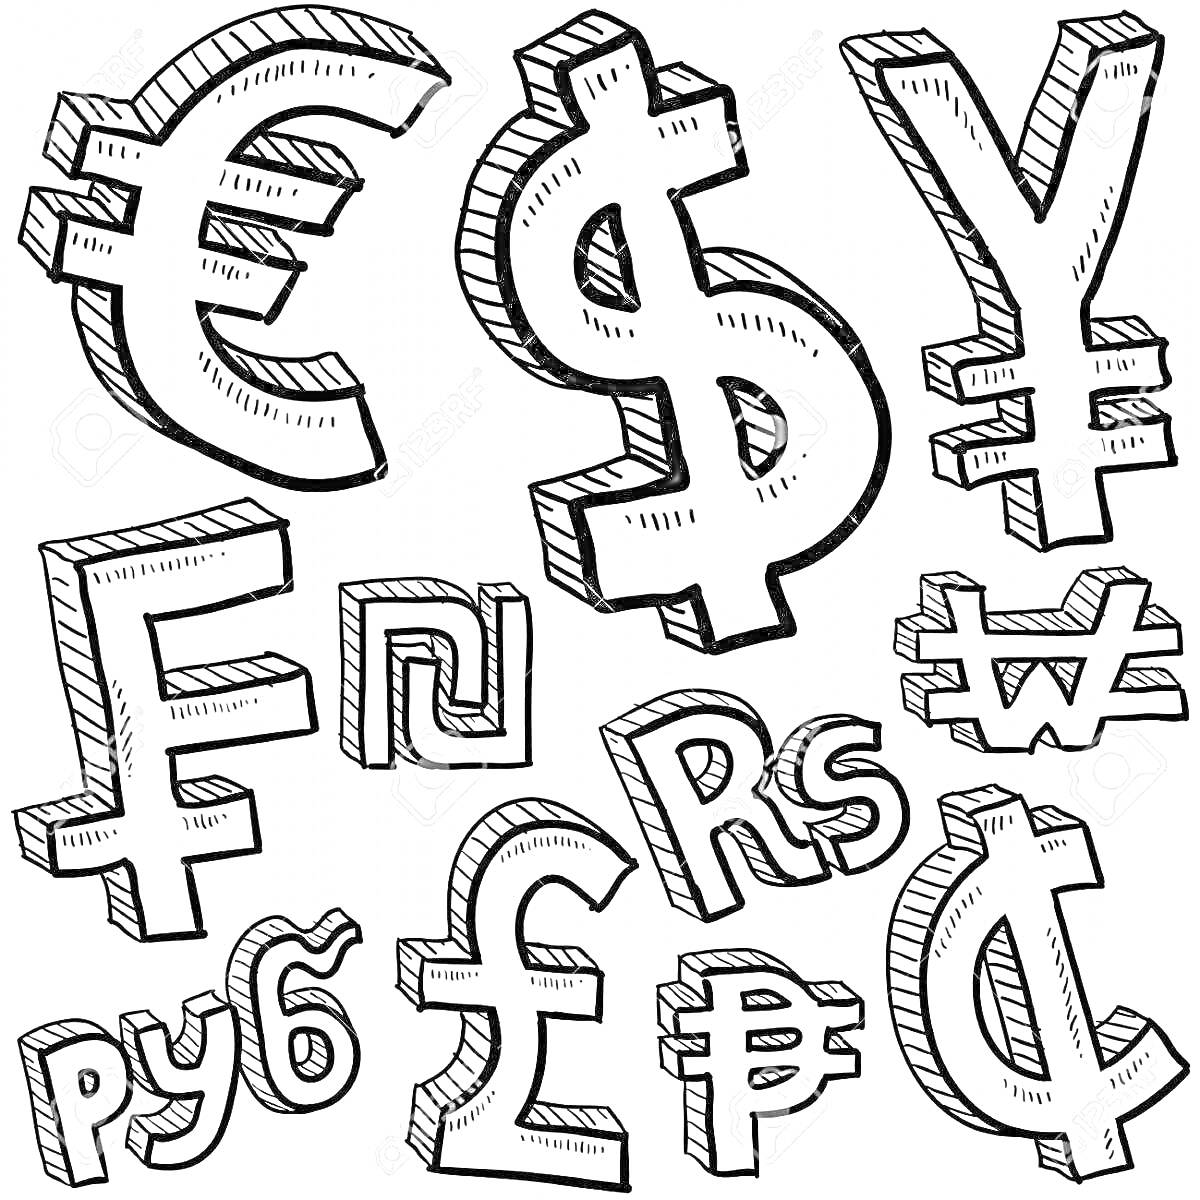 Символы валют (евро, доллар, йена, фунт, рубль, рупия, песо, гривна, рэнд)